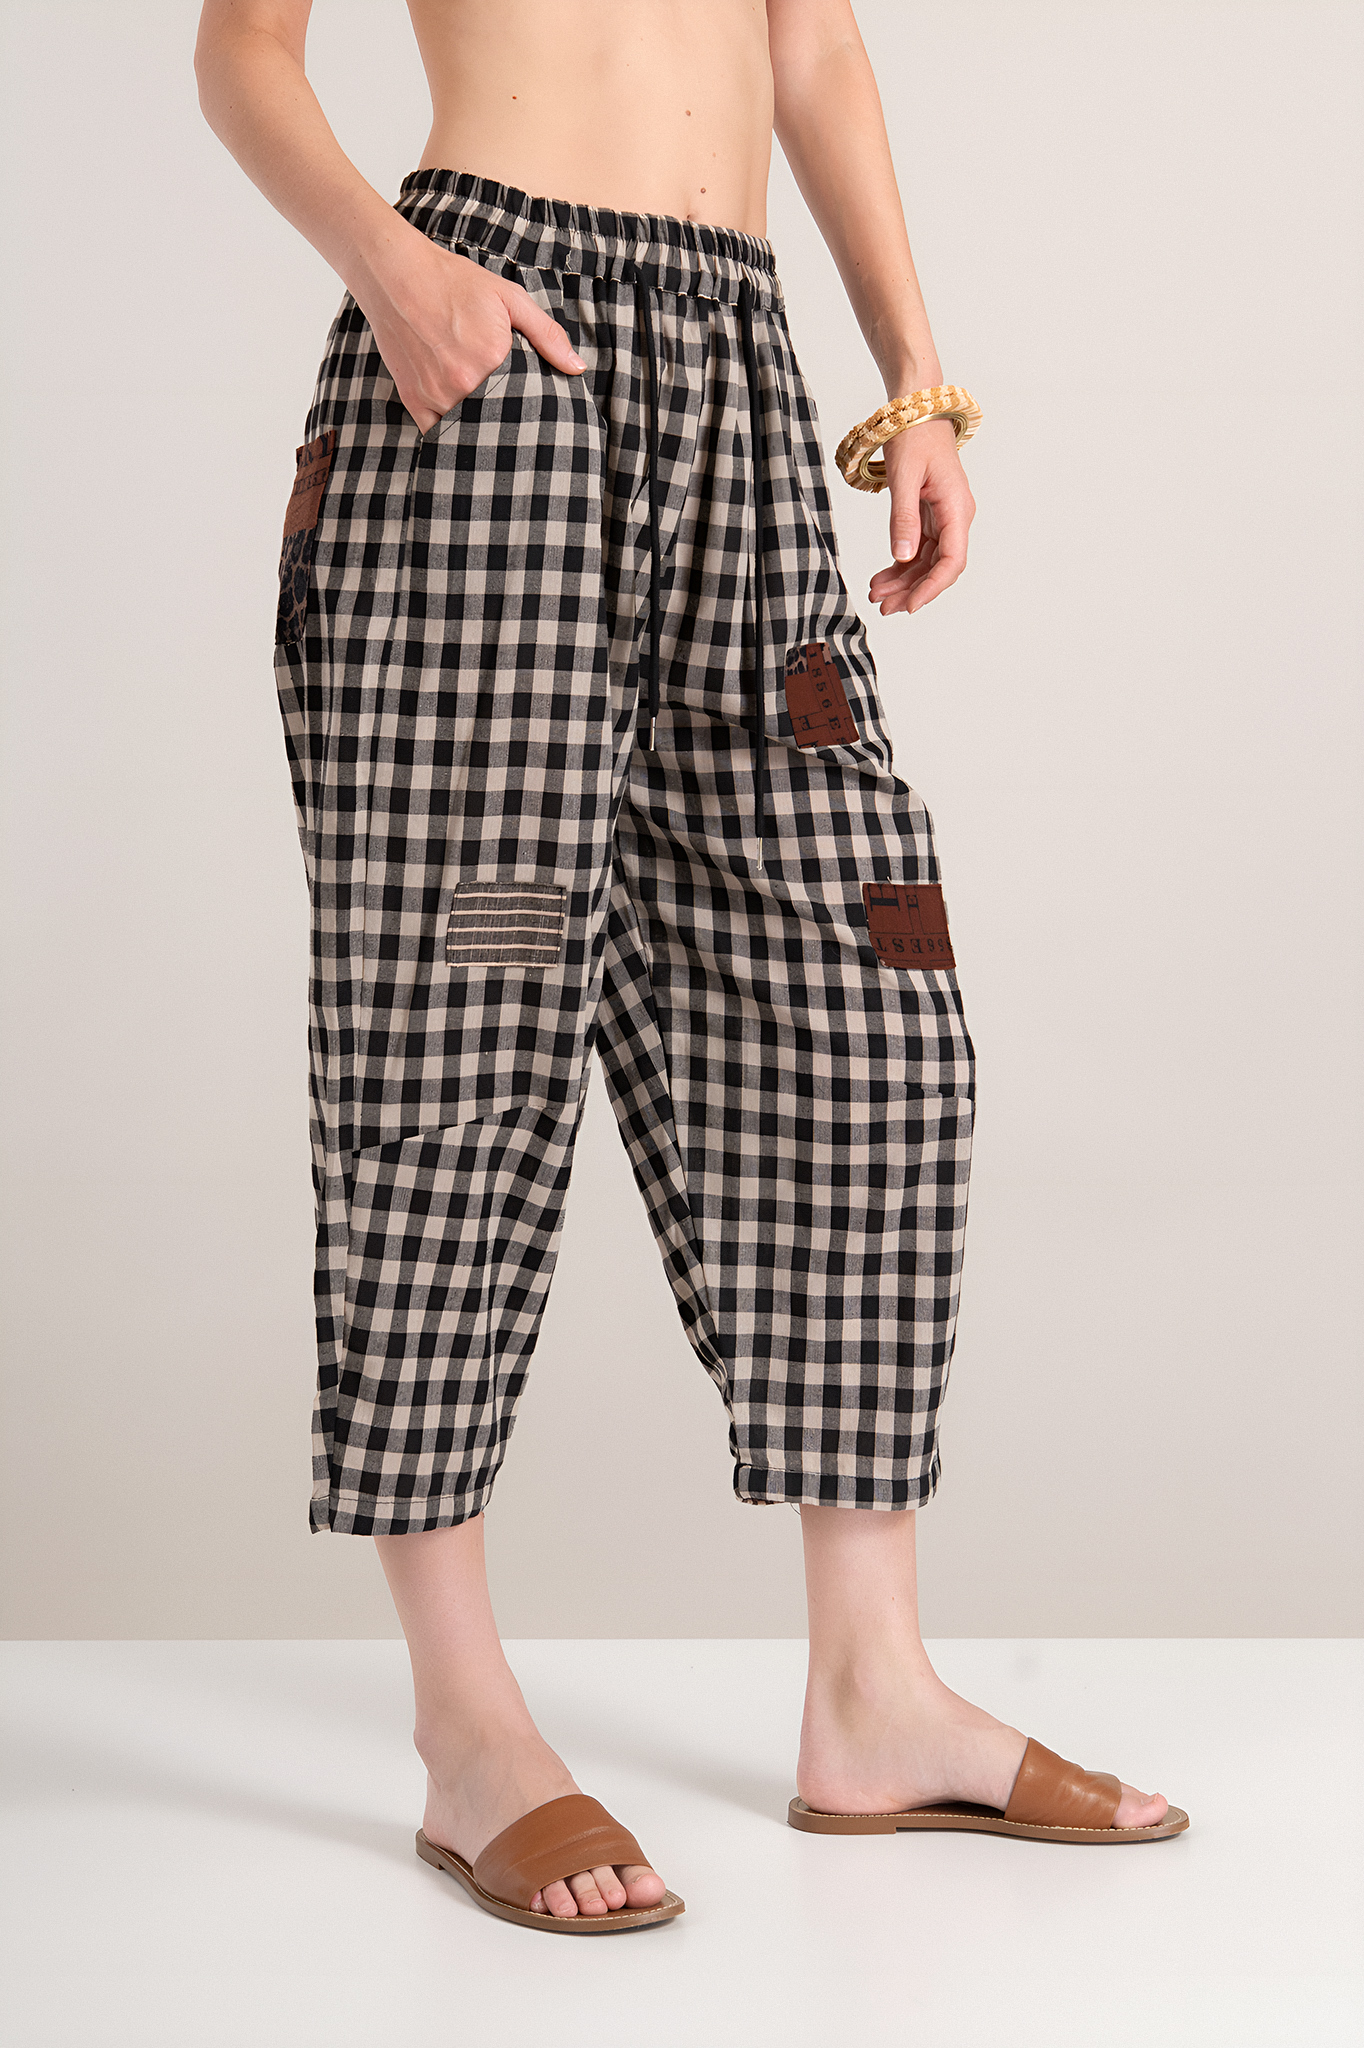 Дамски панталон от памук с принт едро каре в черно и бежово с леопардова апликация